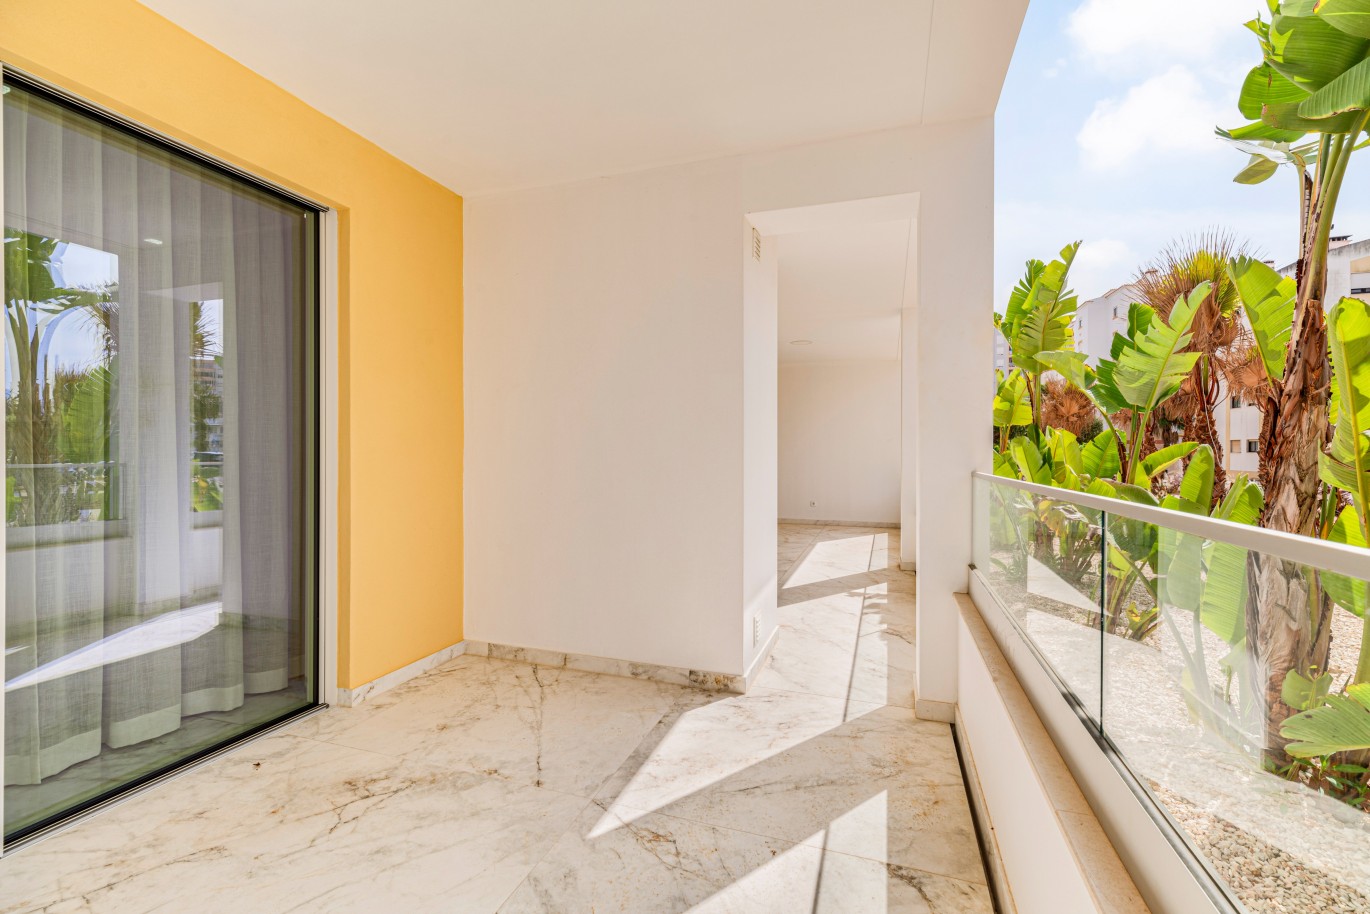 Apartamento, com terraço, para venda, em Lagos, Algarve_238001